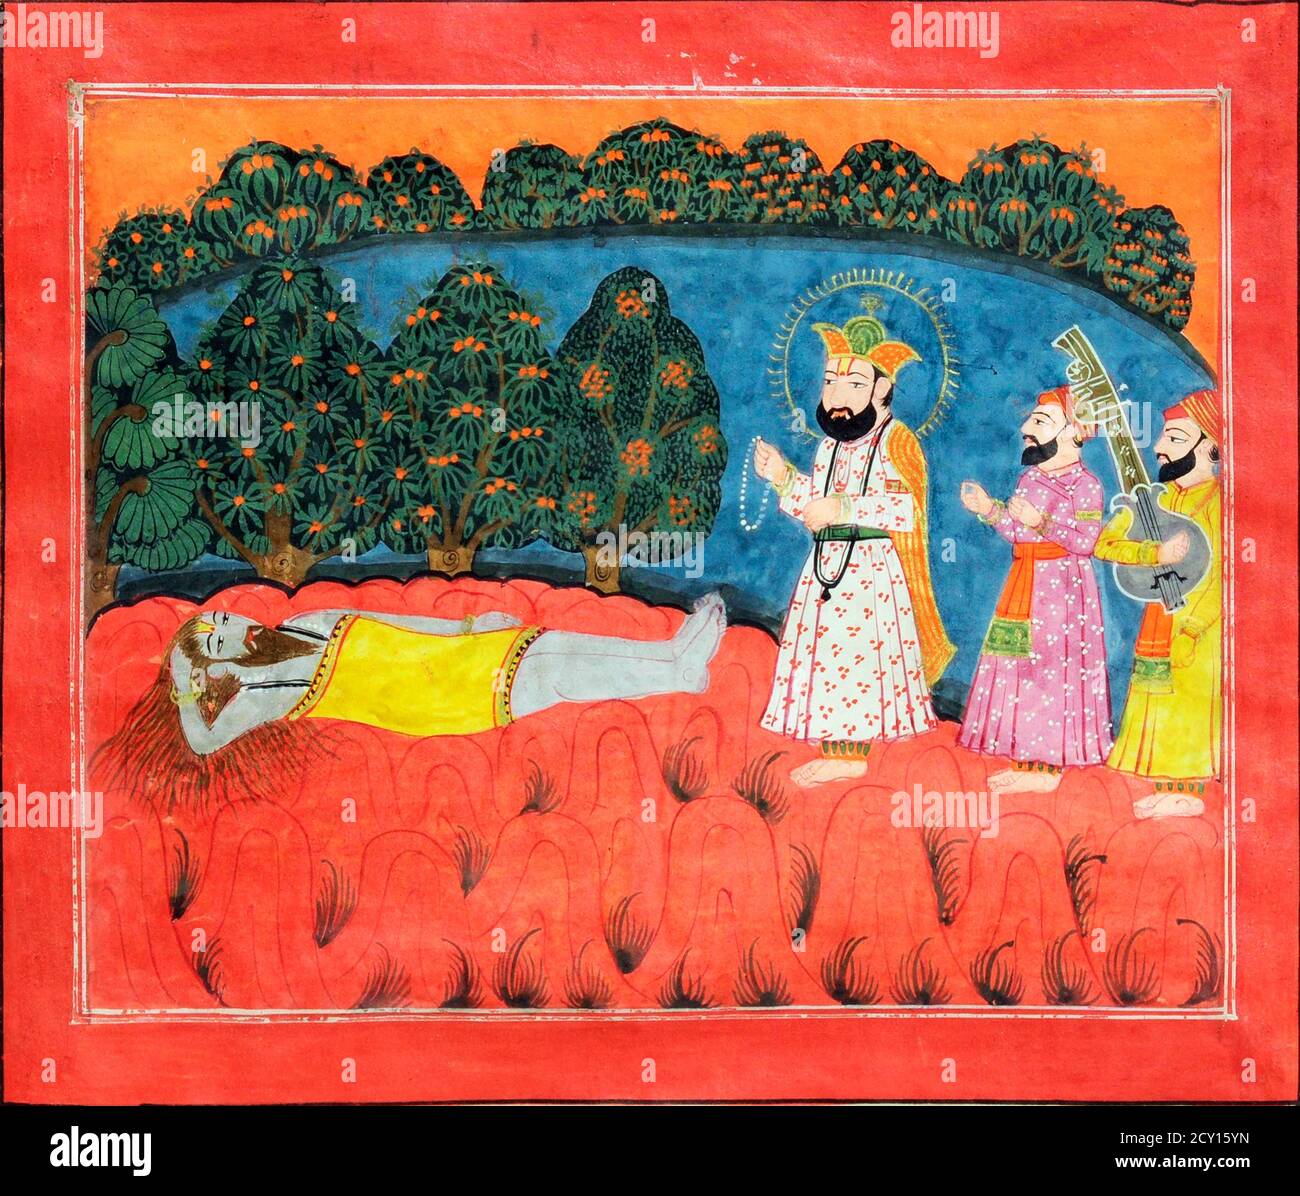 Guru Nanak vient sur la Sanyasi Dattetreya, peinture, pigments naturels sur papier, vers 1775-1800, école de Kashmiri. Guru Nanak a été le premier Guru sikh et le fondateur du Sikhisme. Banque D'Images